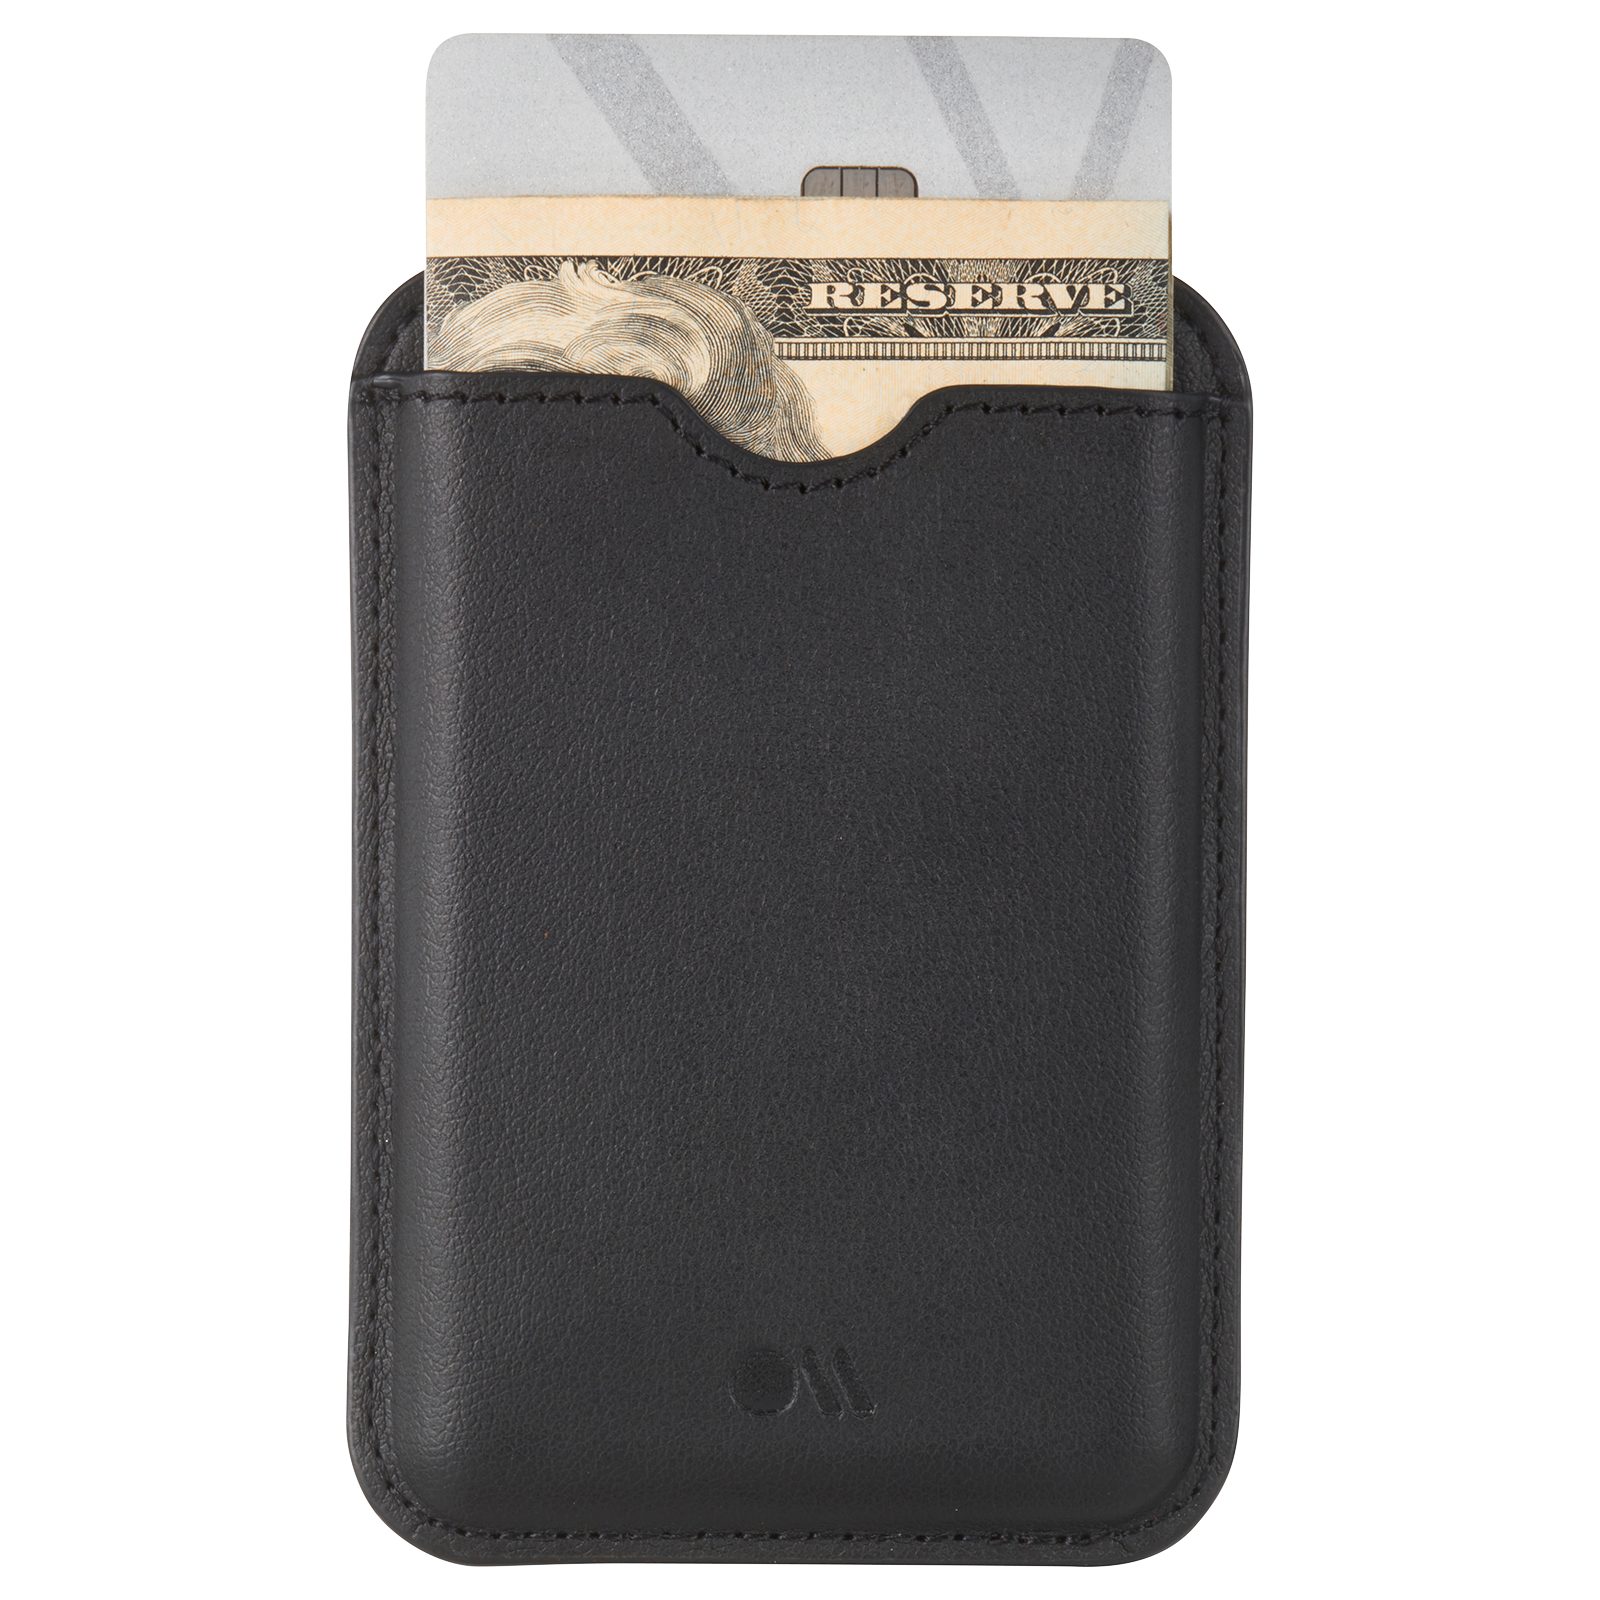 Extra starker Schwarz Case-Mate MagSafe Kartenetui Magnet Leder Wallet,